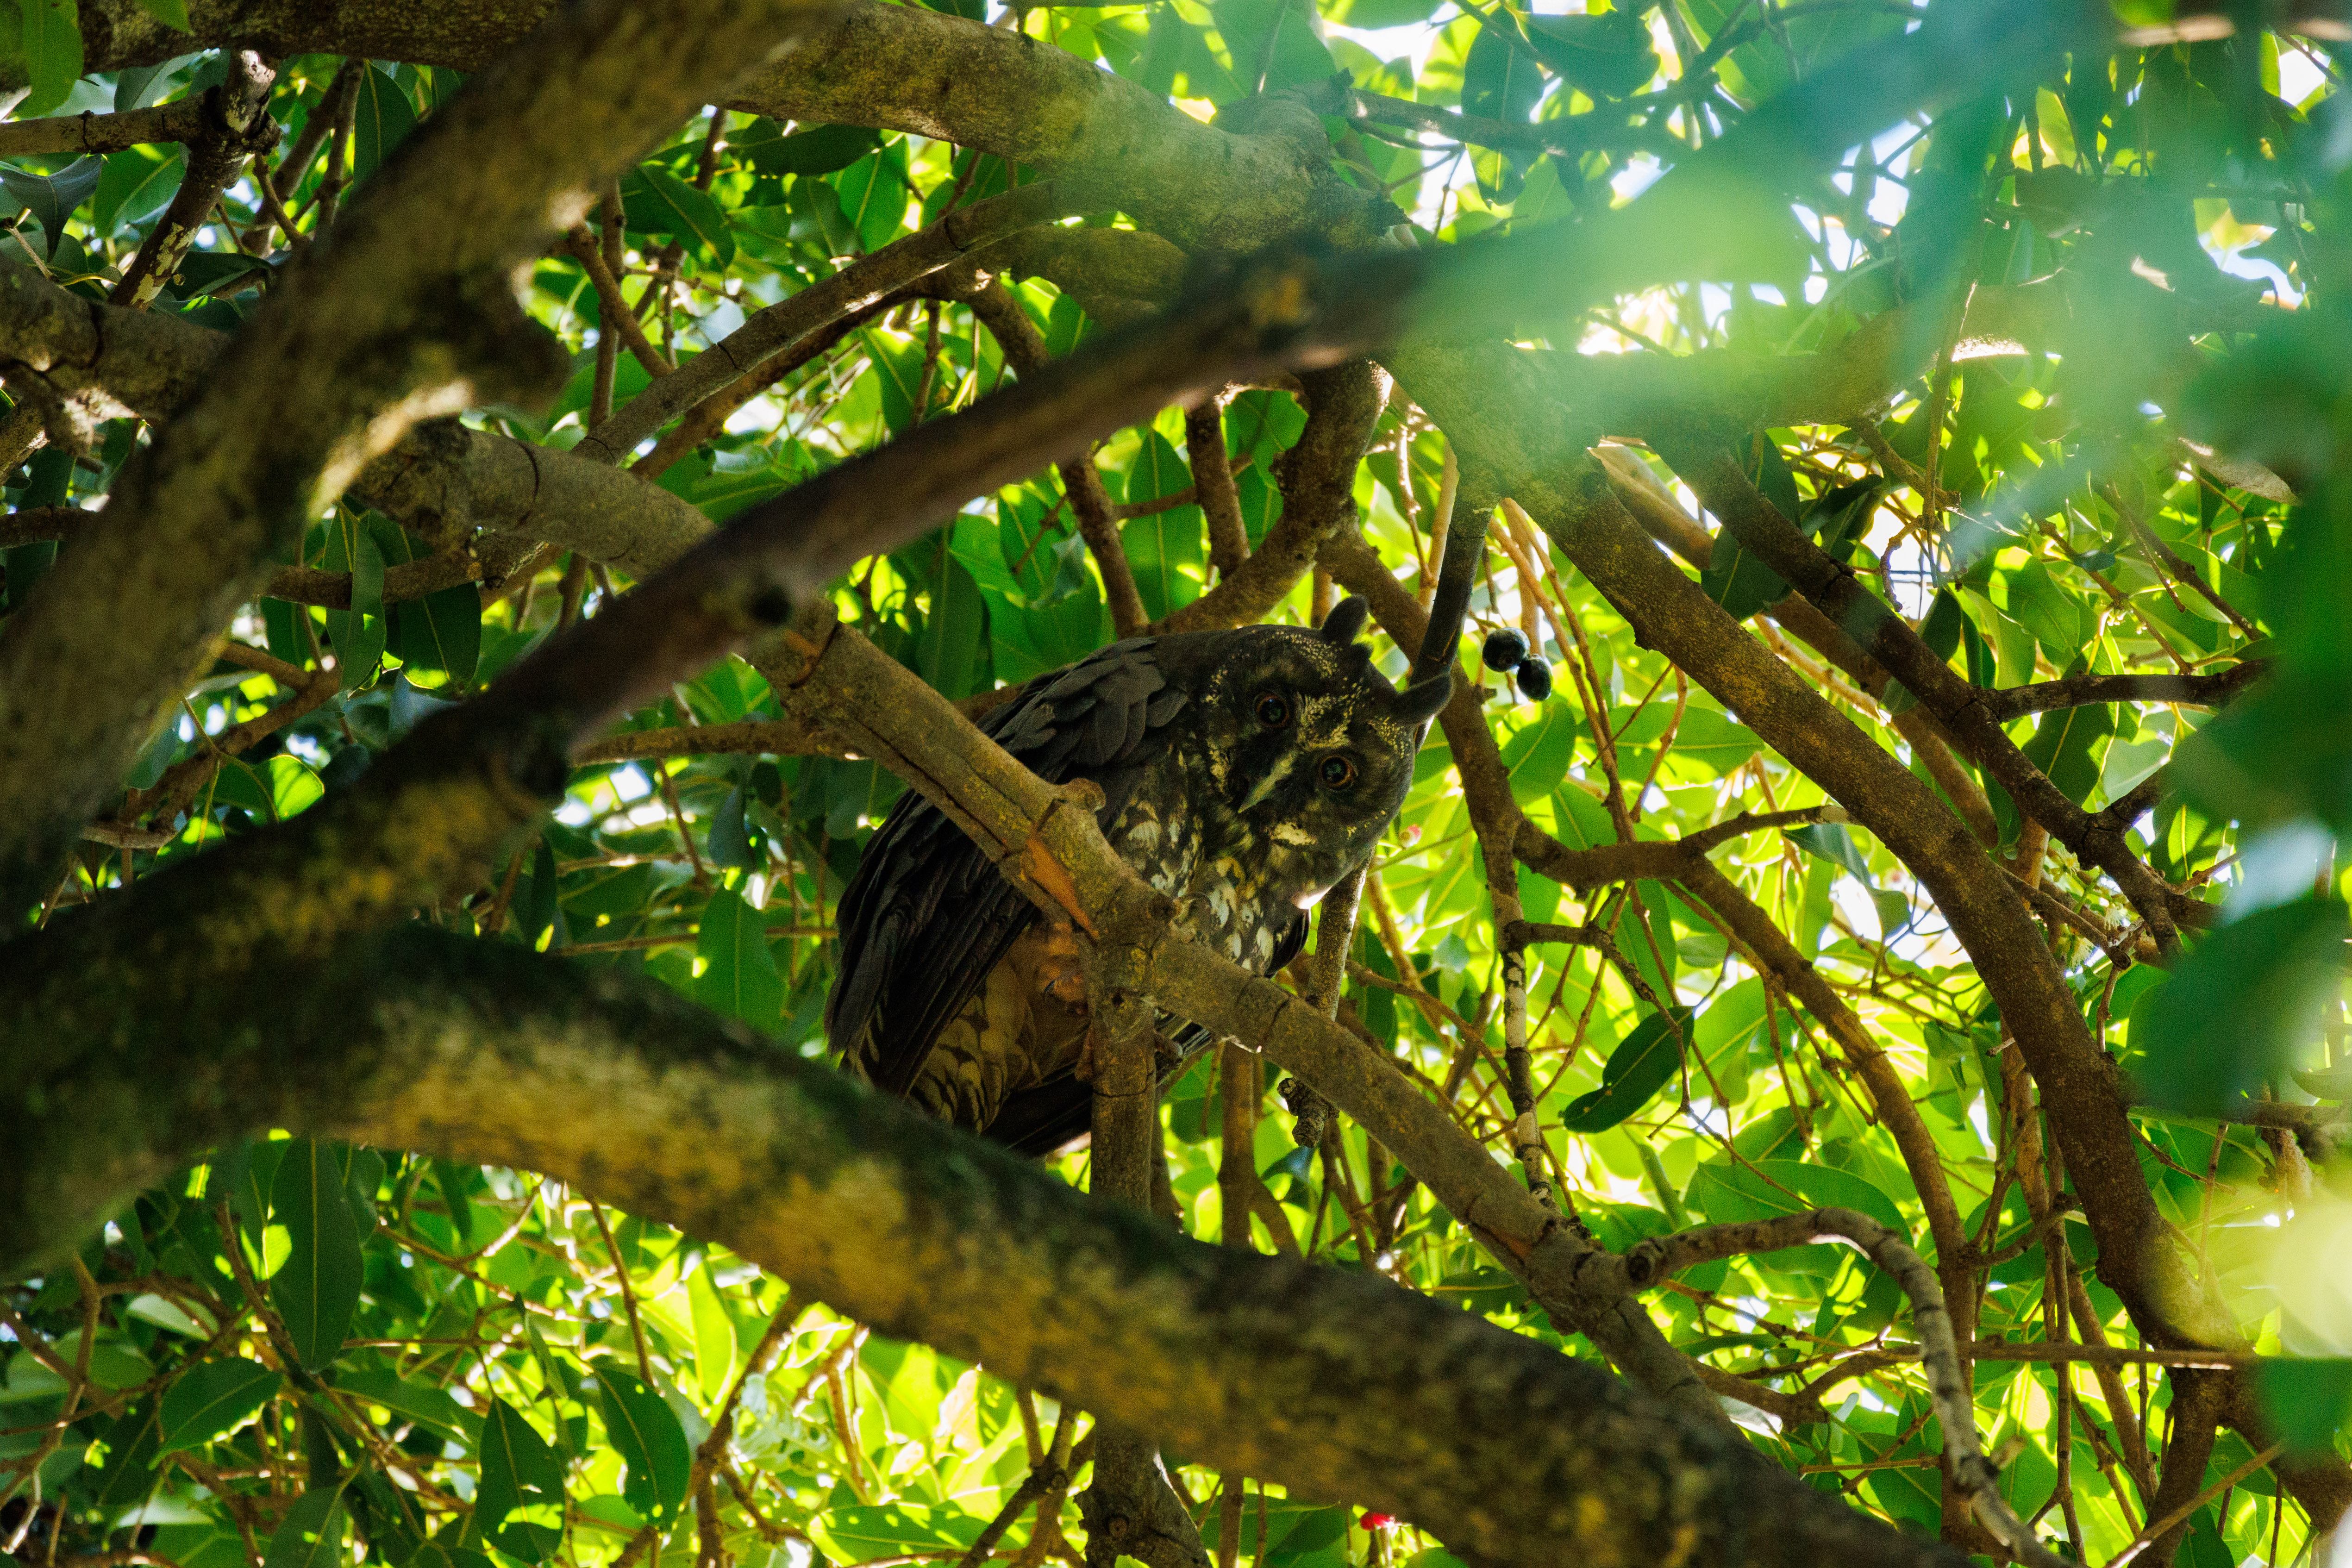 Uma linda e grande coruja, também conhecida como coruja-diabo. Encontro ela sempre na mesma árvore durante o dia.